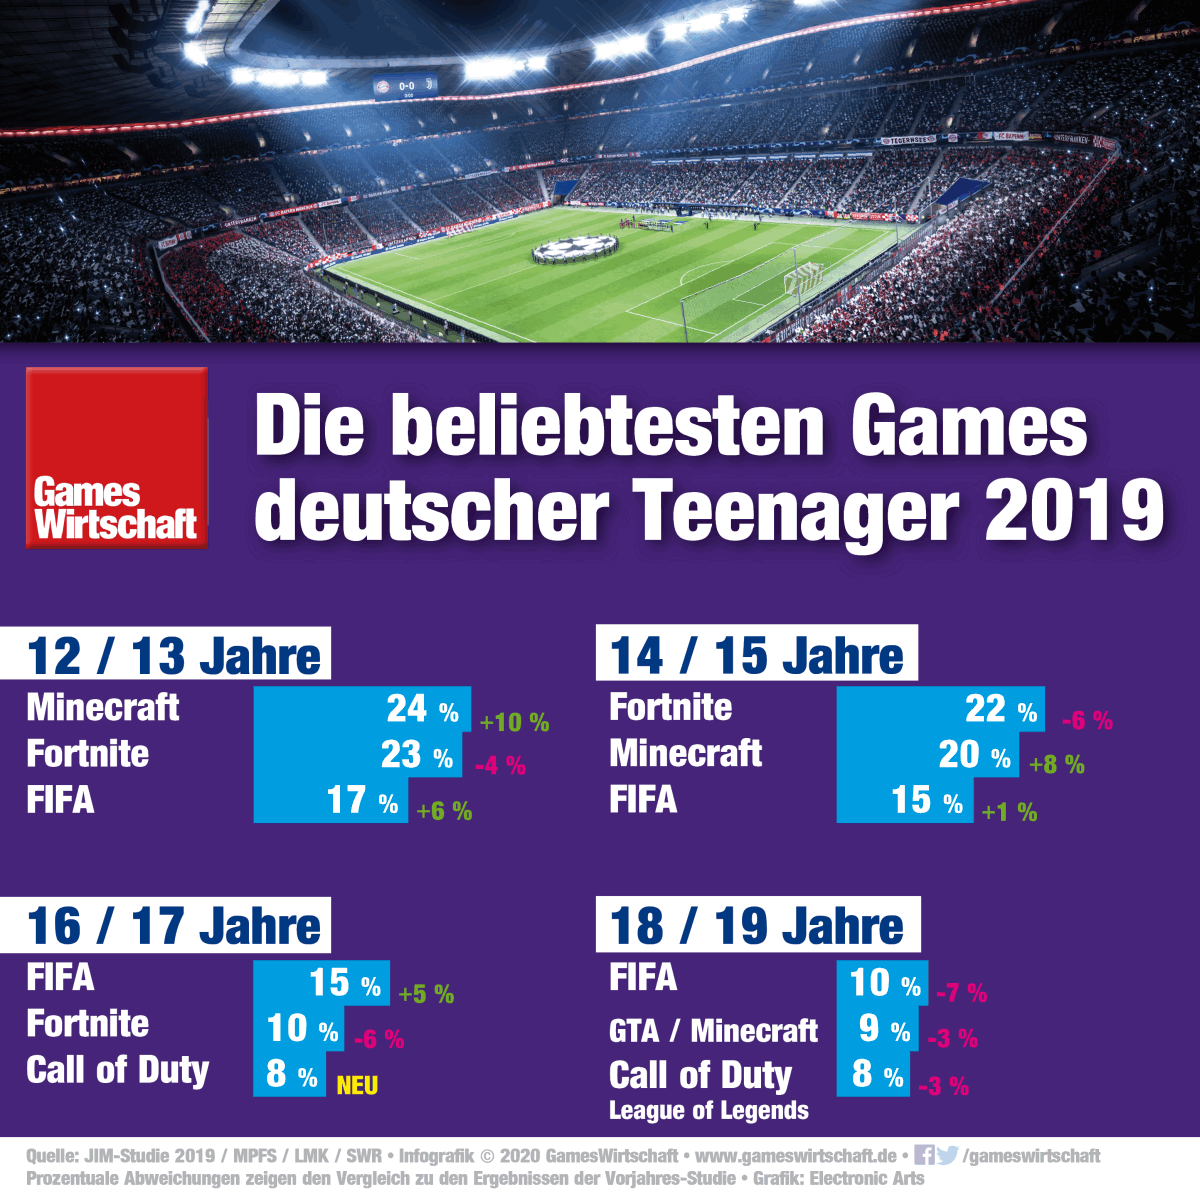 Geringeres Interesse an Fortnite, Zuwächse bei FIFA: Das sind die beliebtesten Games deutscher Teenager laut JIM-Studie 2019.